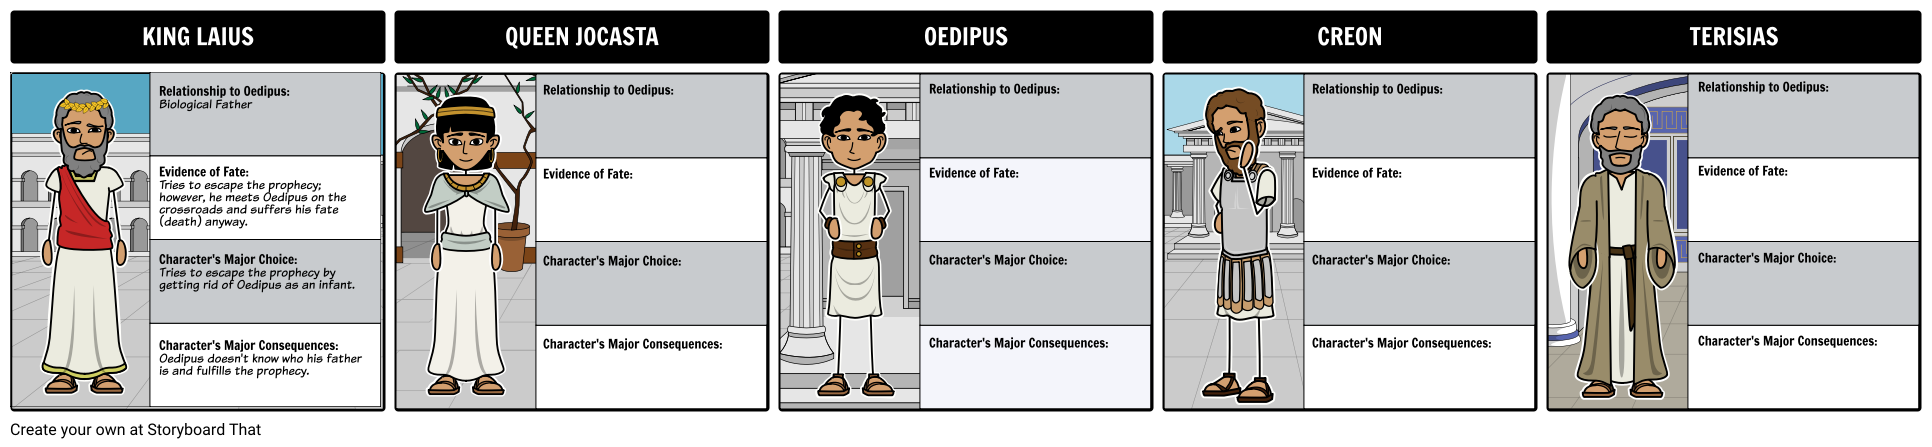 Oedipus complex